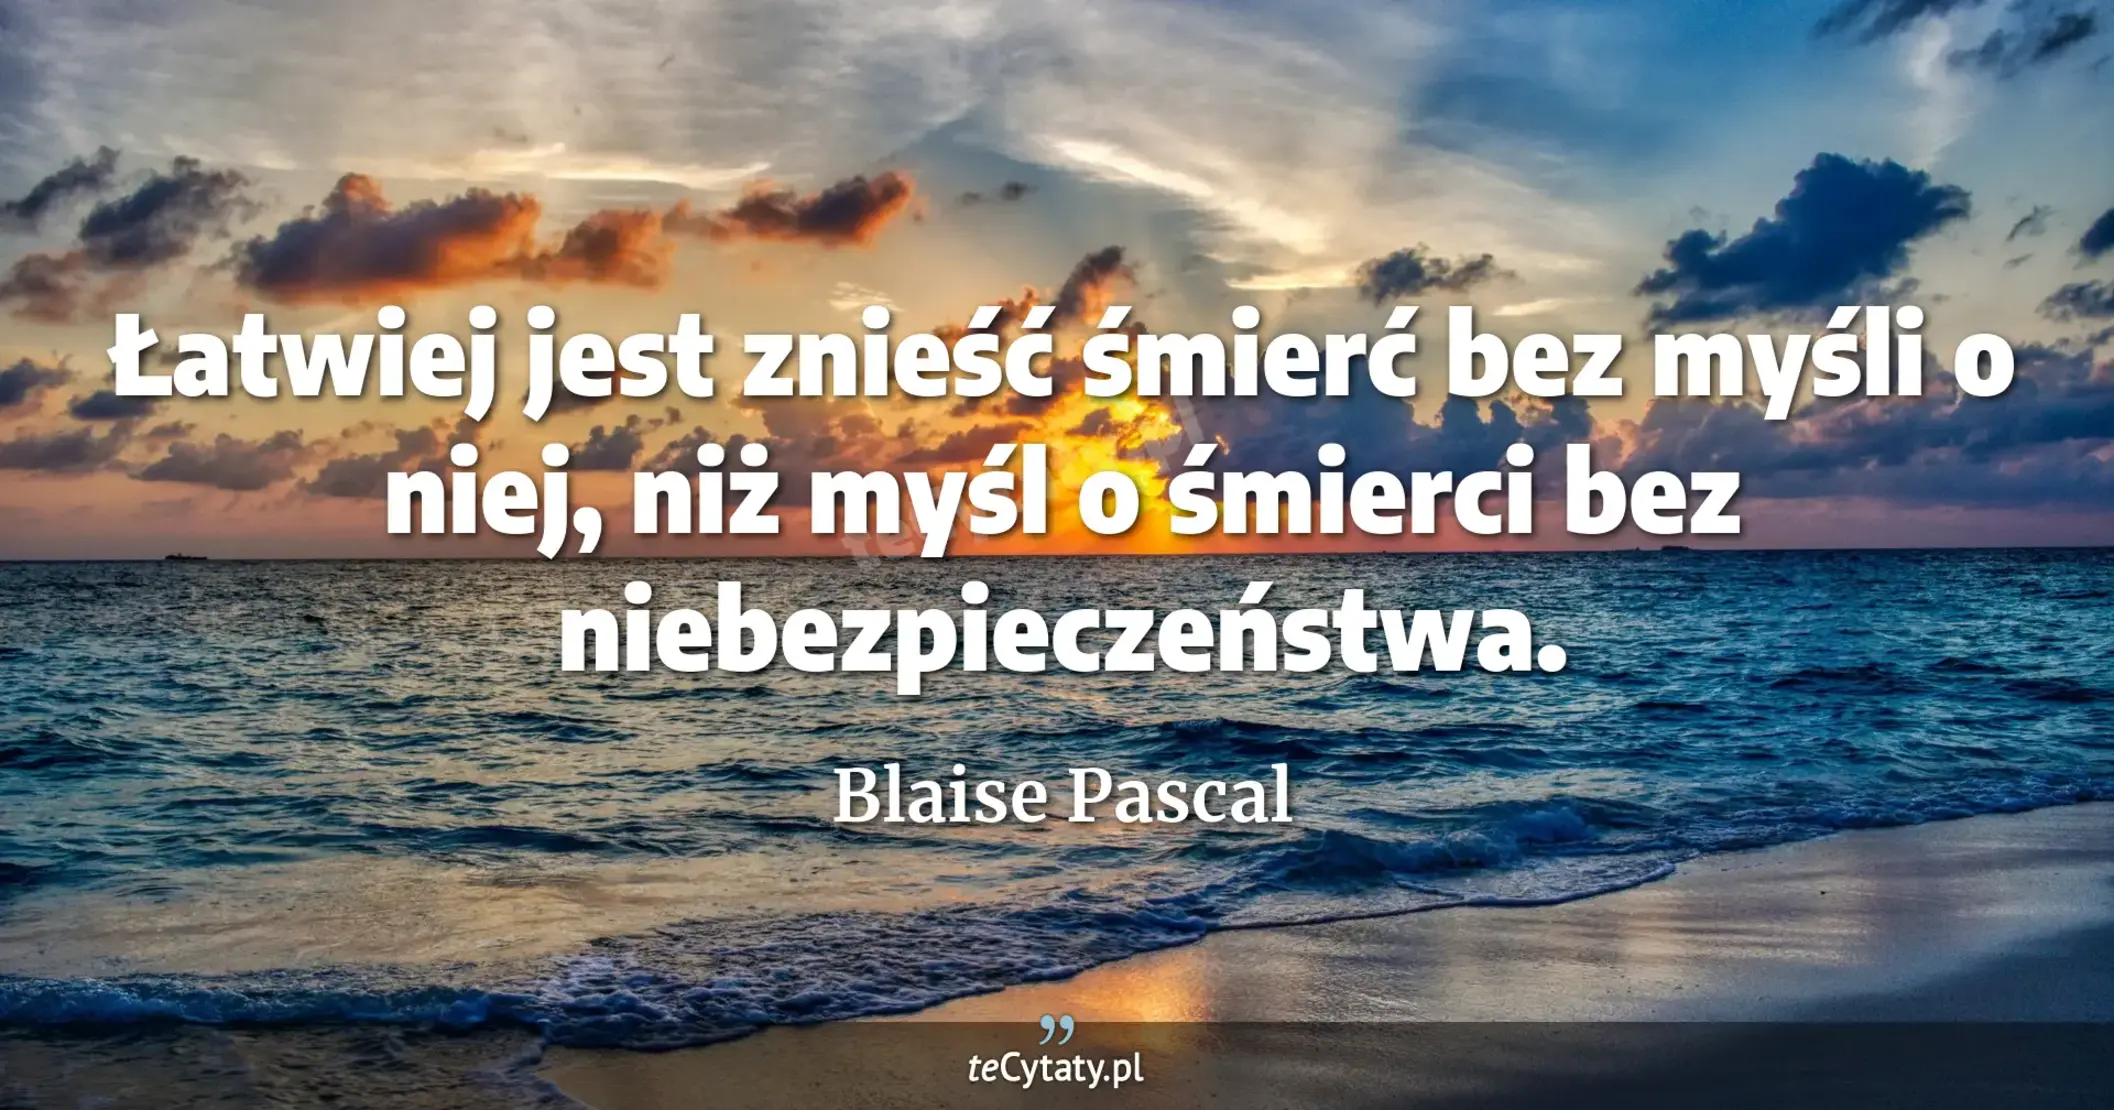 Łatwiej jest znieść śmierć bez myśli o niej, niż myśl o śmierci bez niebezpieczeństwa. - Blaise Pascal